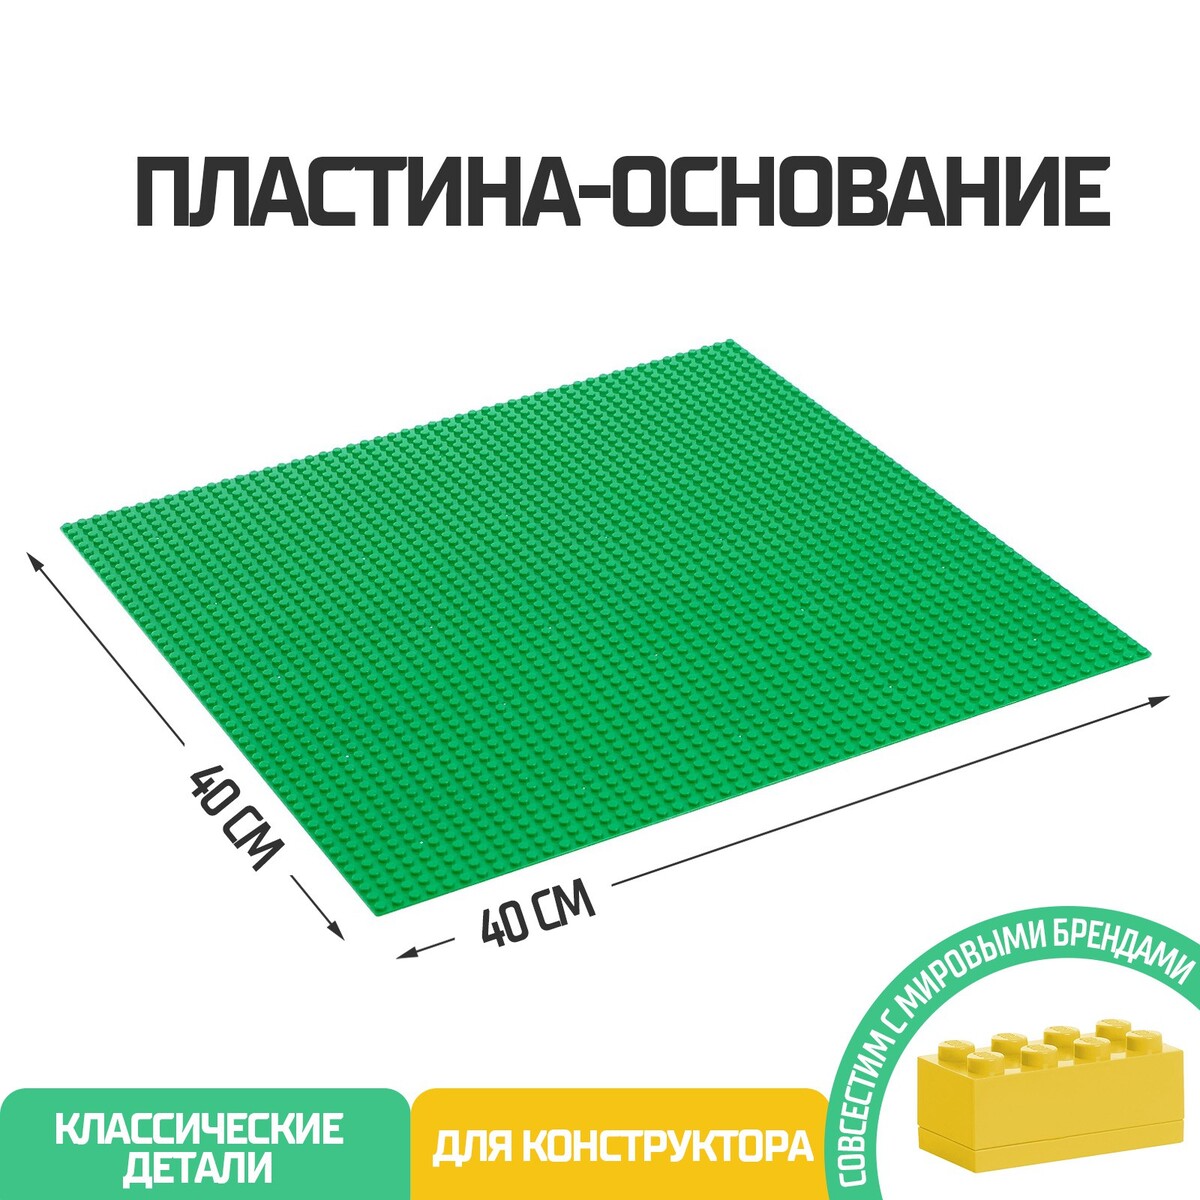 Пластина-основание для конструктора, 40 х 40 см, цвет зеленый пластина основание для конструктора 27 × 38 5 см салатовый